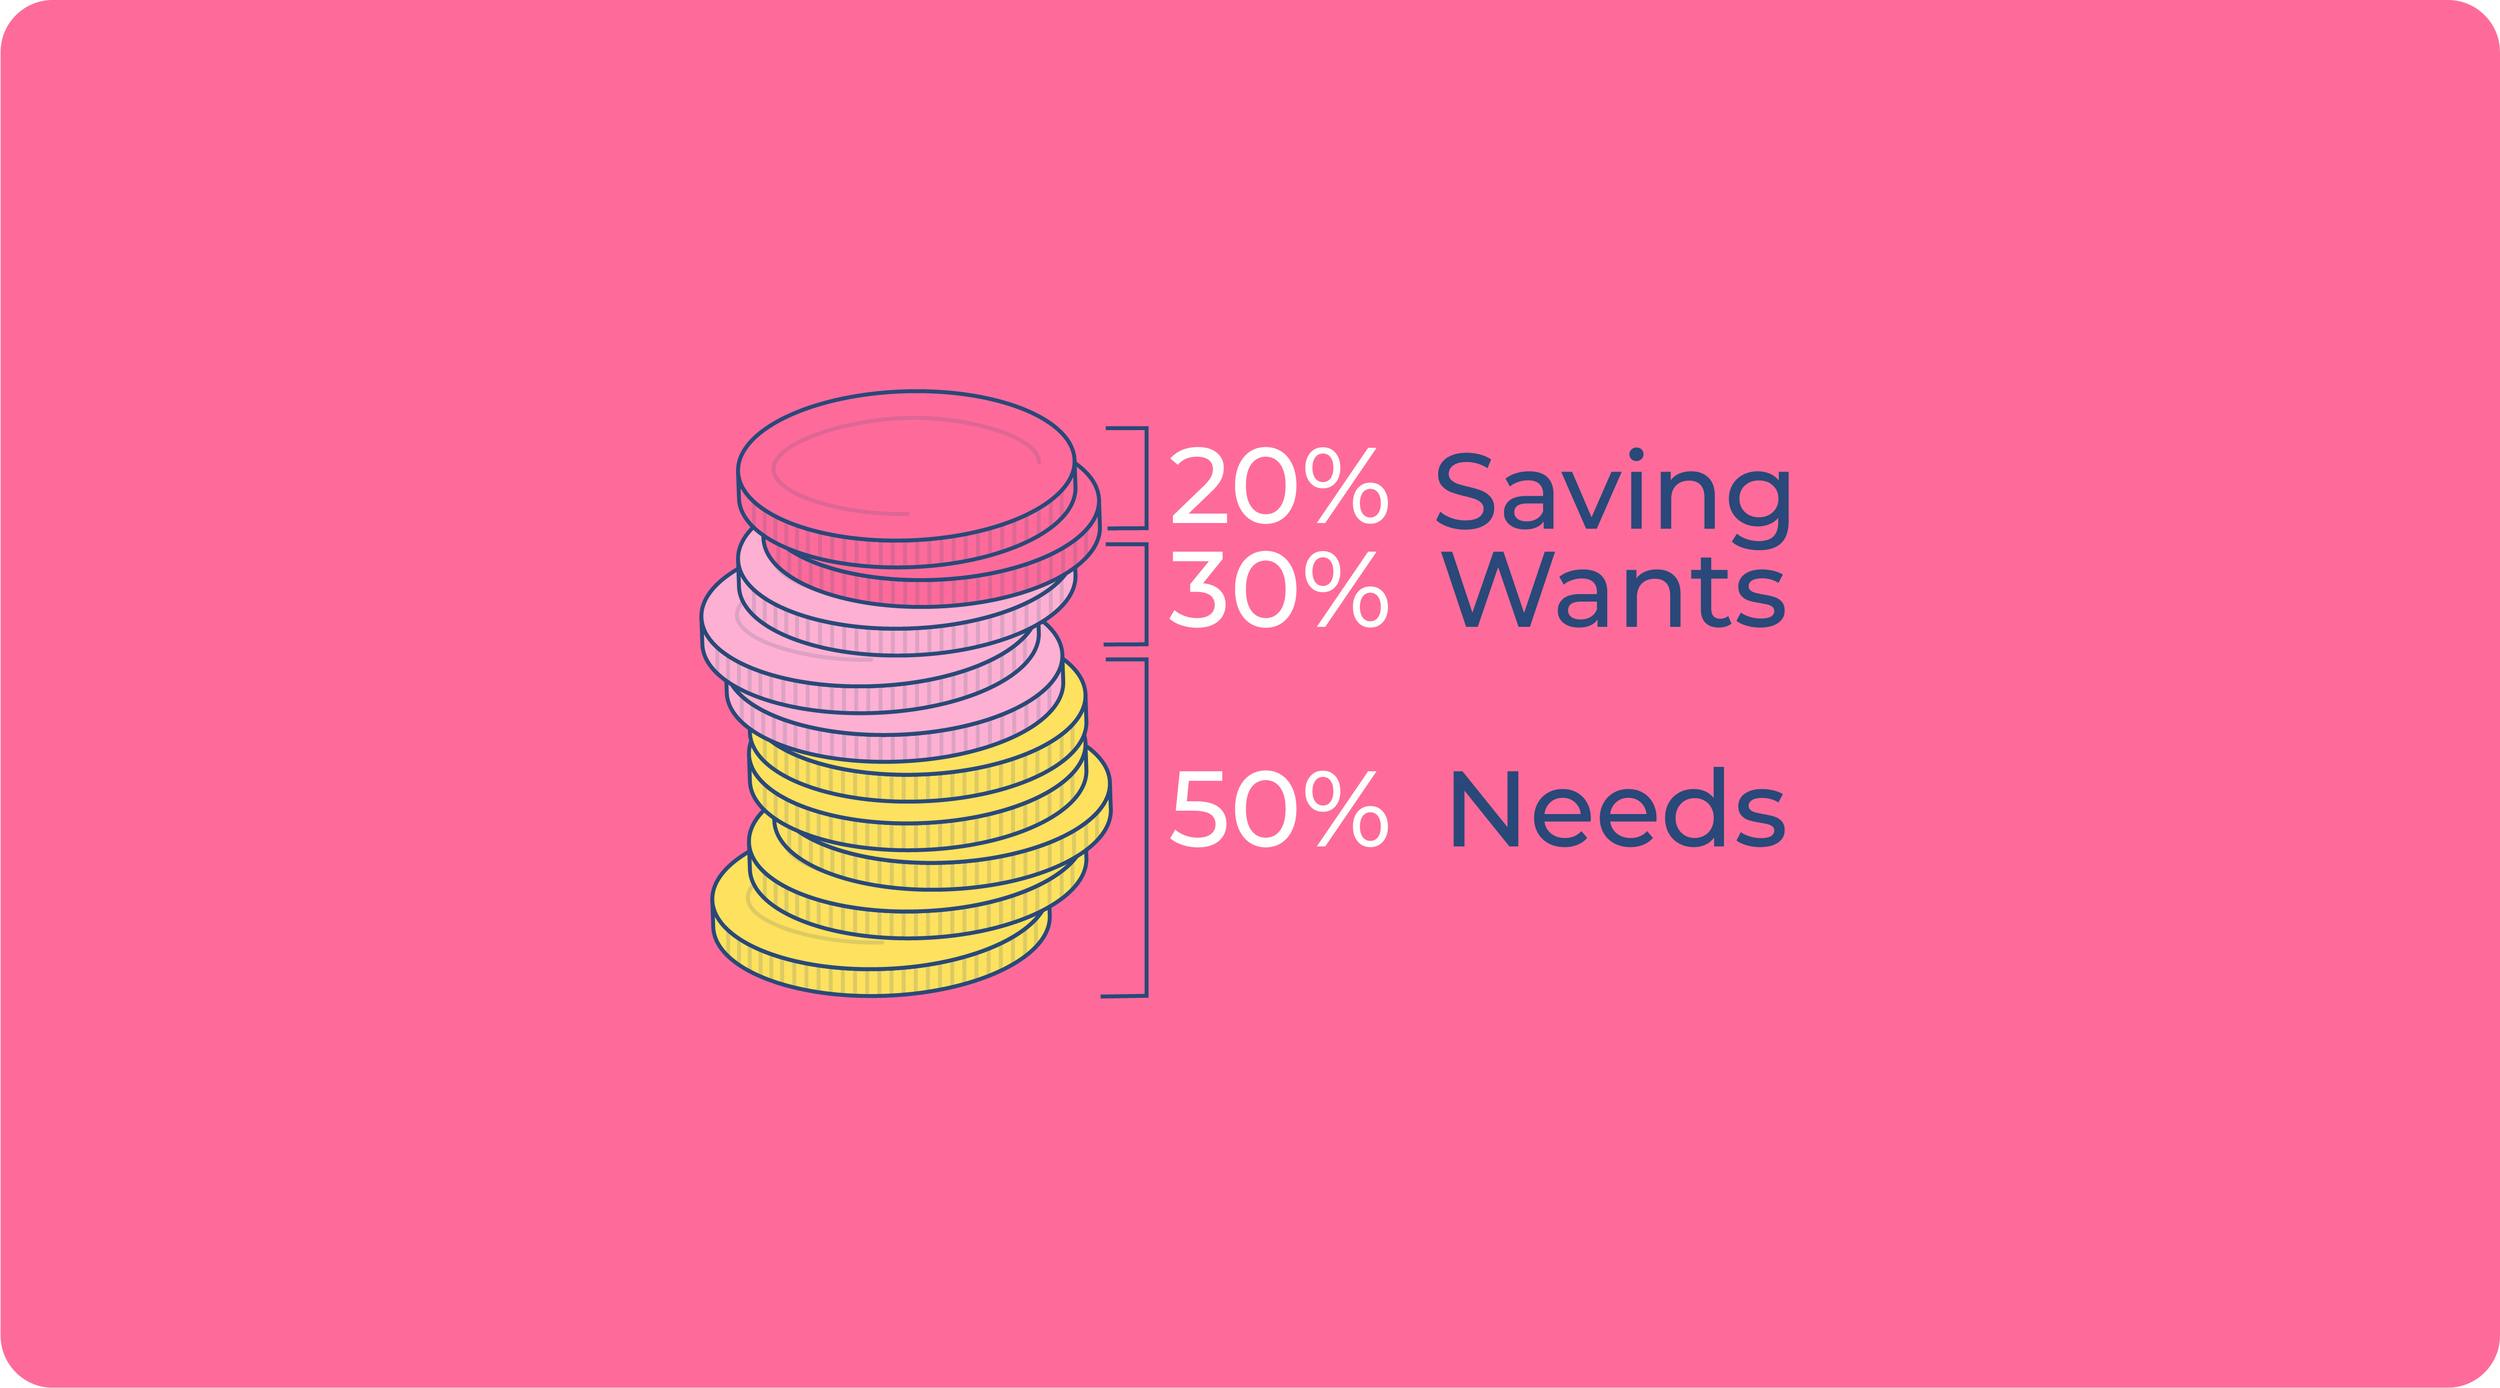 "Coins, die die 50/30/20-Regel visualisieren: 50% der Münzen für lebensnotwendige Ausgaben, 30% für persönliche Ausgaben und 20% für Ersparnisse und Schuldenabbau.